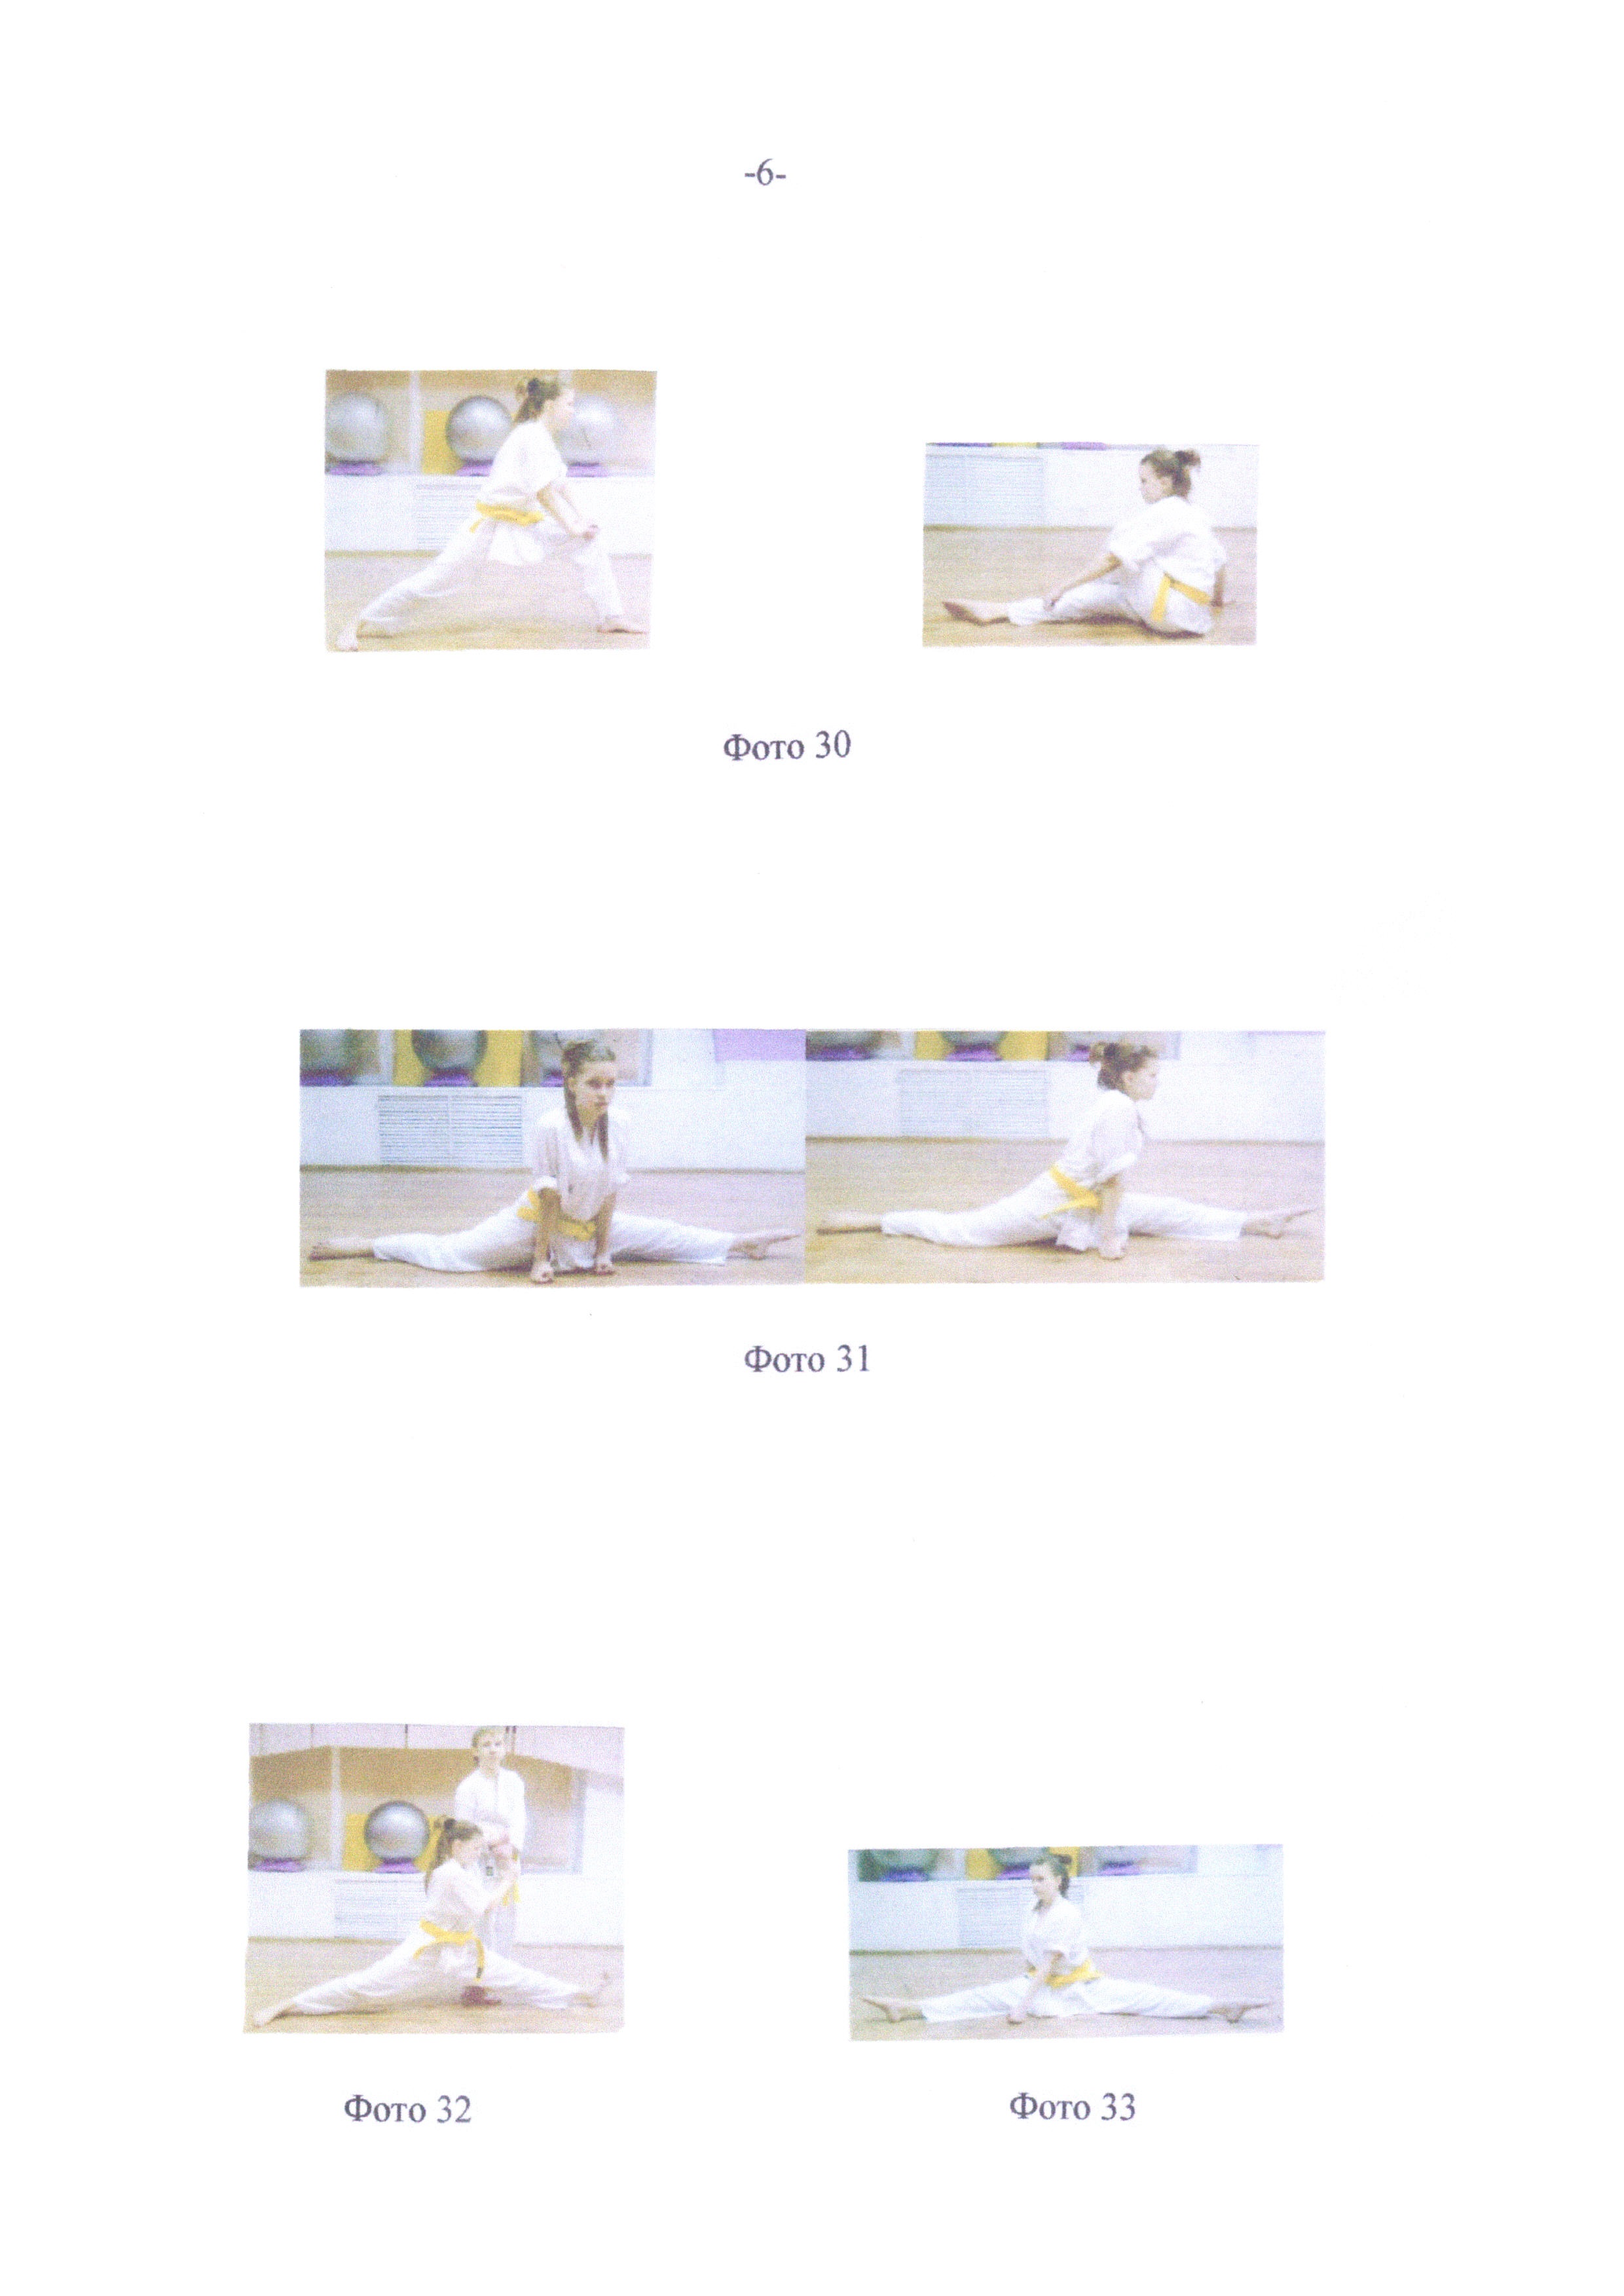 Методика коррекции S- и С-образных сколиозов у подростков 12-15 лет с помощью упражнений карате Киокусинкай